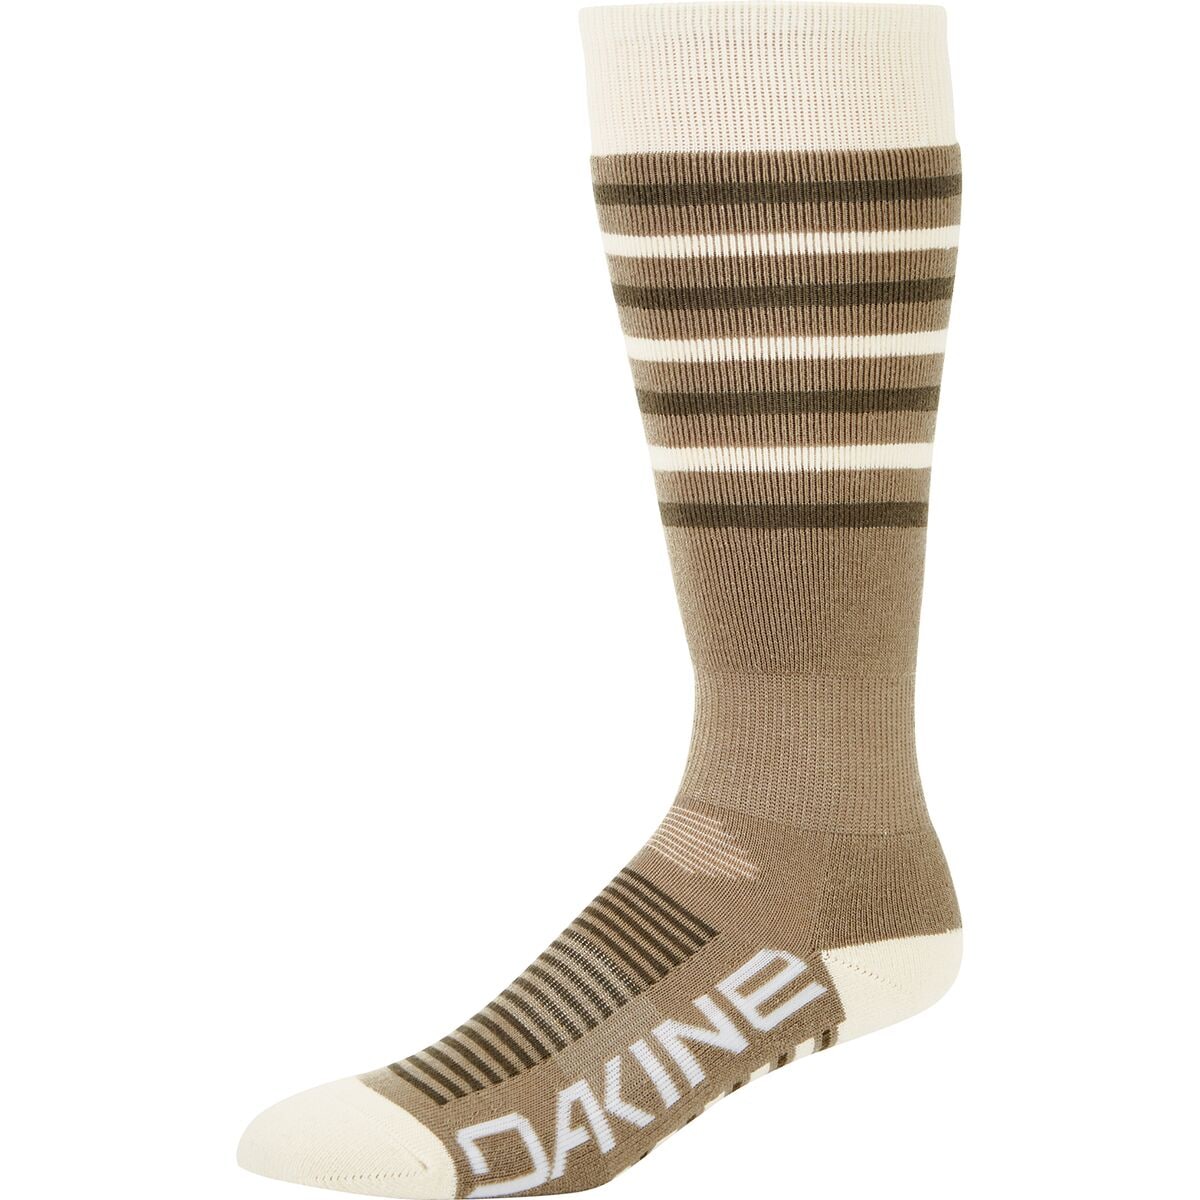 DAKINE Summit Sock - Women's